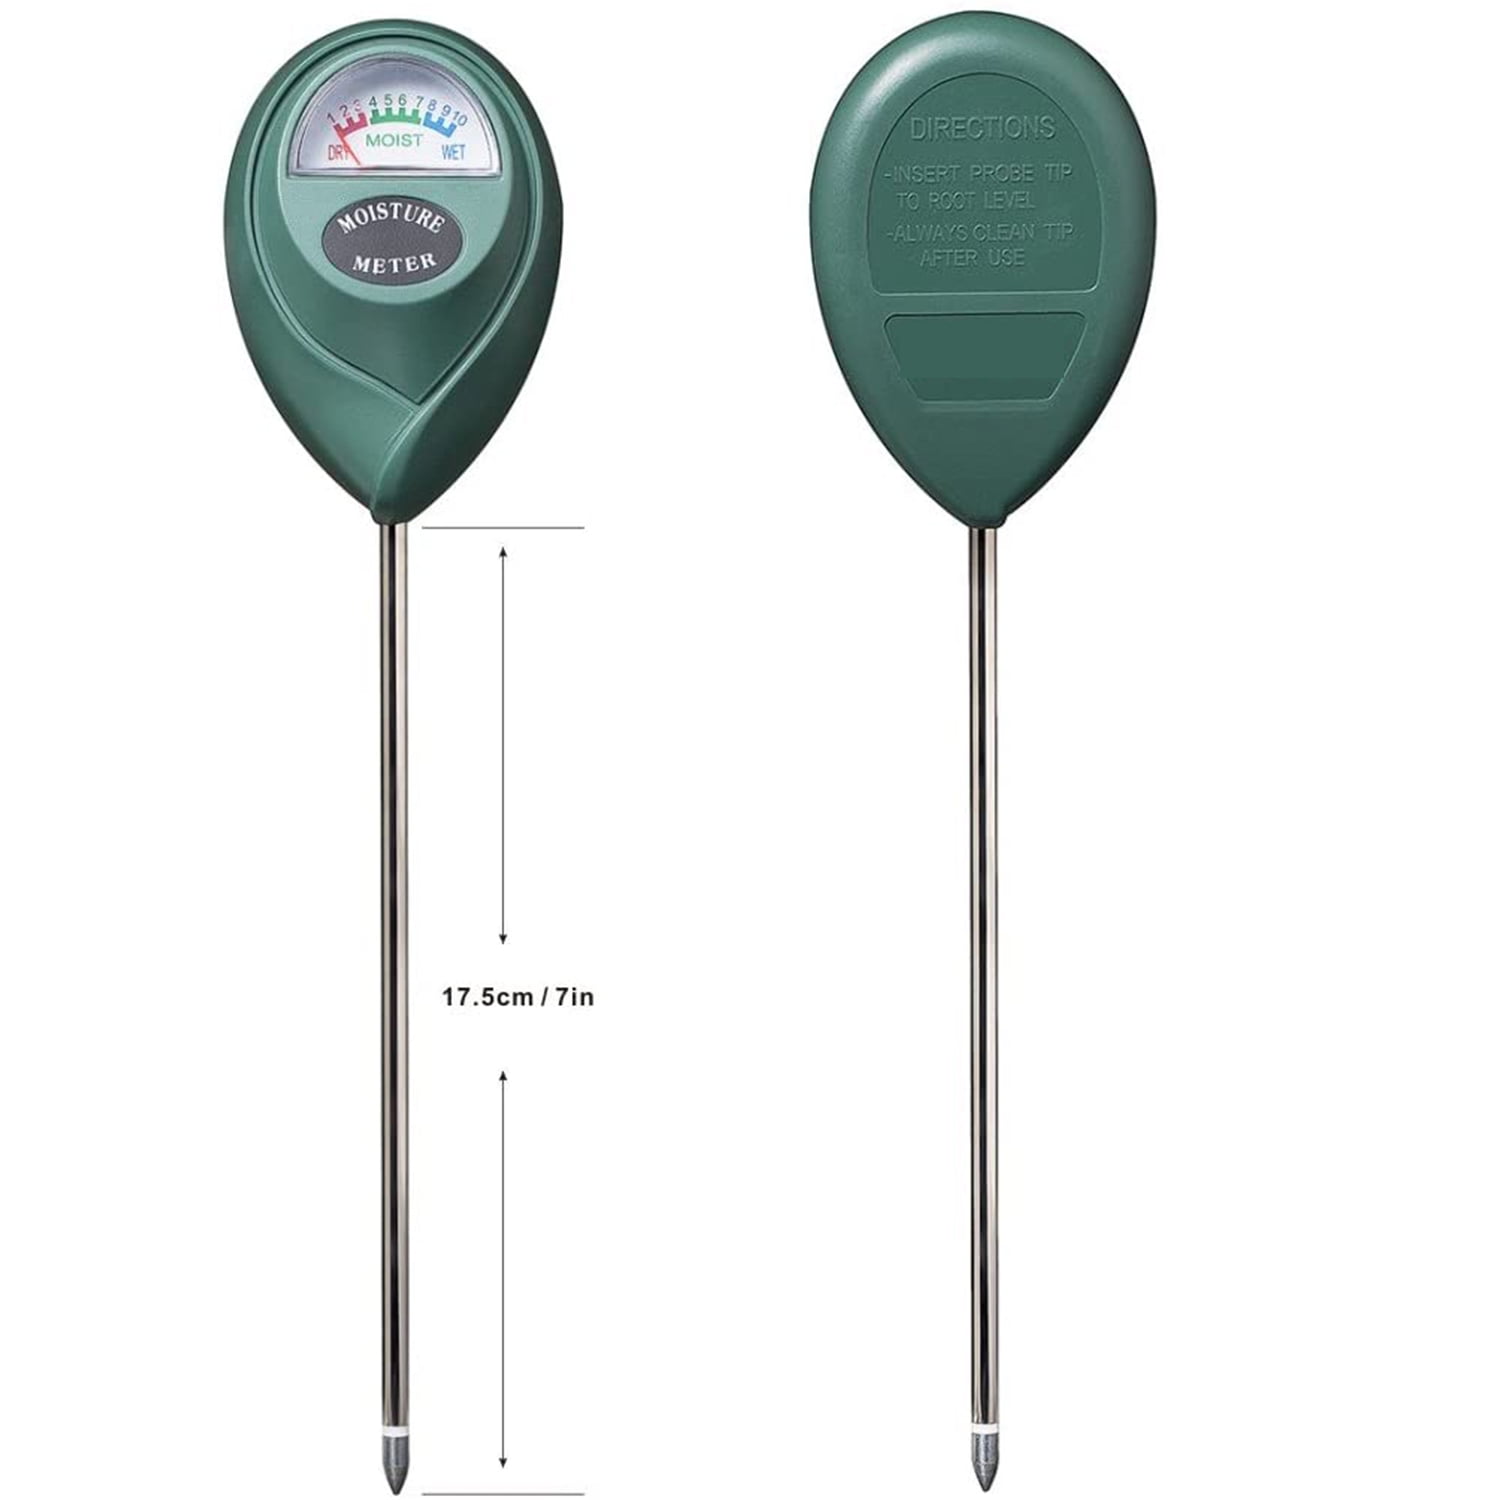 IUSEIT Soil Moisture Meter,Soil Hygrometer for Plants, Soil Water Gauge Meter Indoor Outdoor, Soil Moisture Sensor for Garden, Lawn, Farm Plants